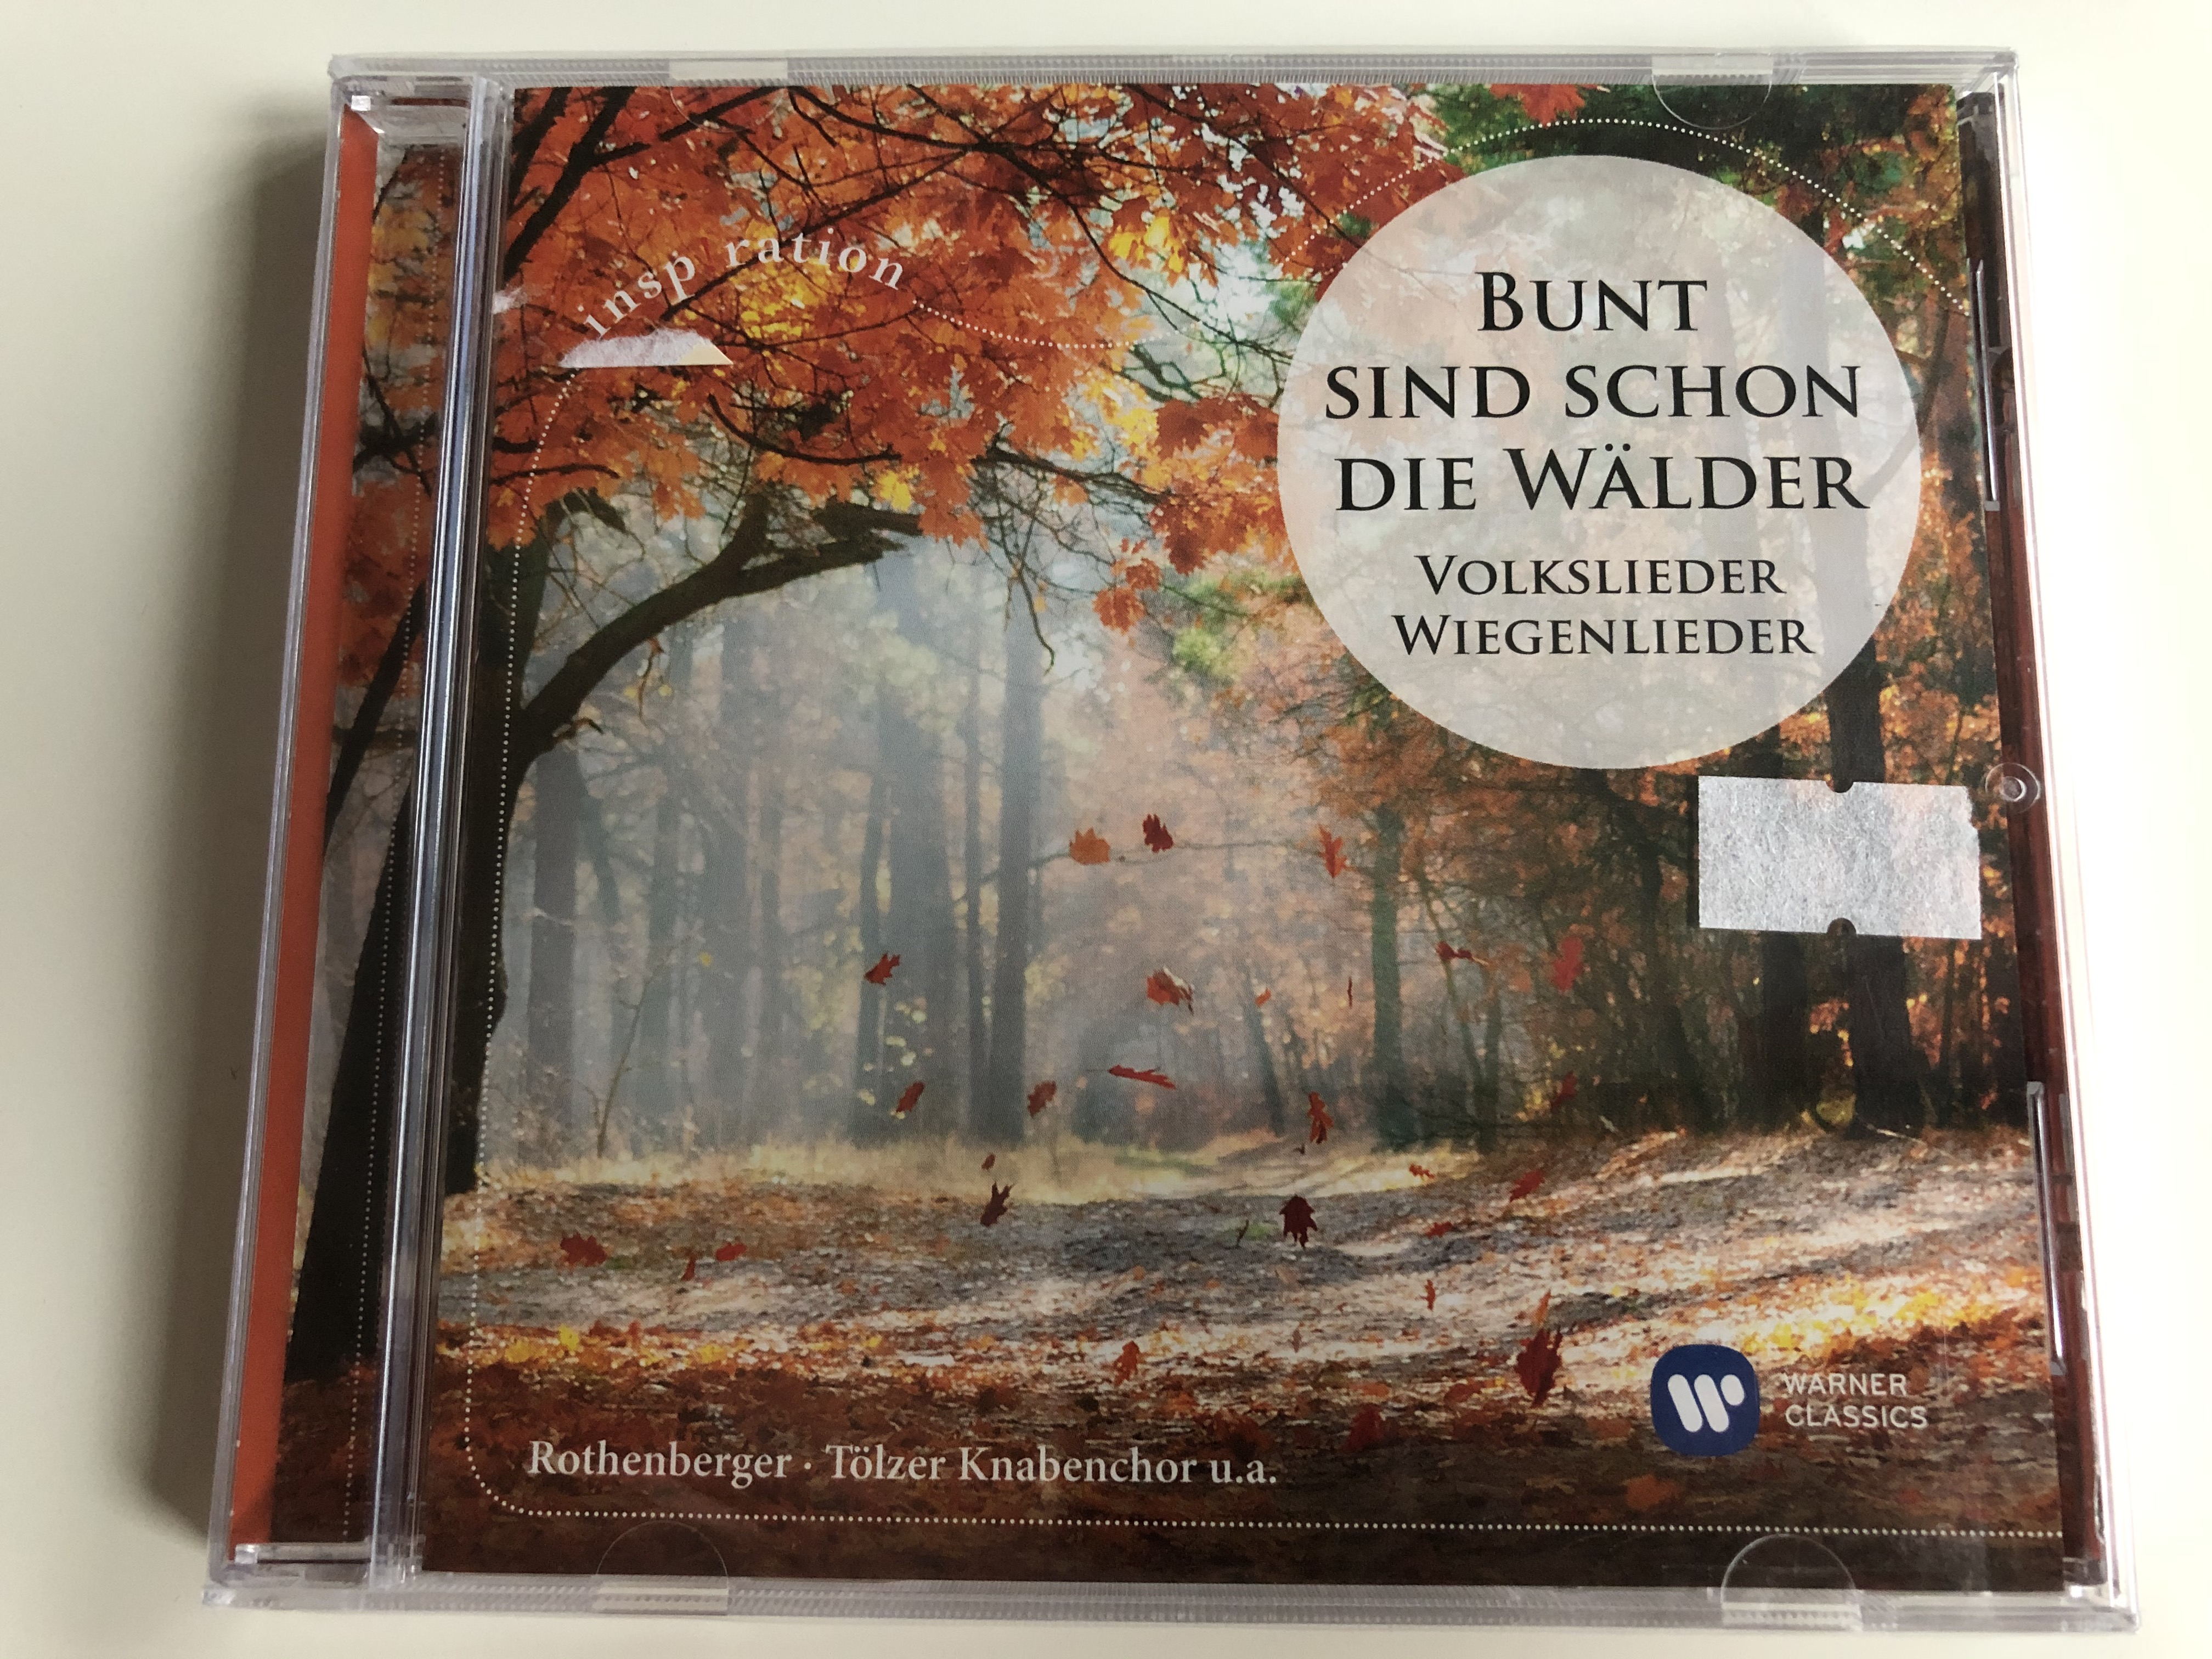 bunt-sind-schon-die-w-lder-volkslieder-wiegenlieder-rothenberger-t-lzer-knabenchor-warner-classics-audio-cd-2017-0190295776800-1-.jpg